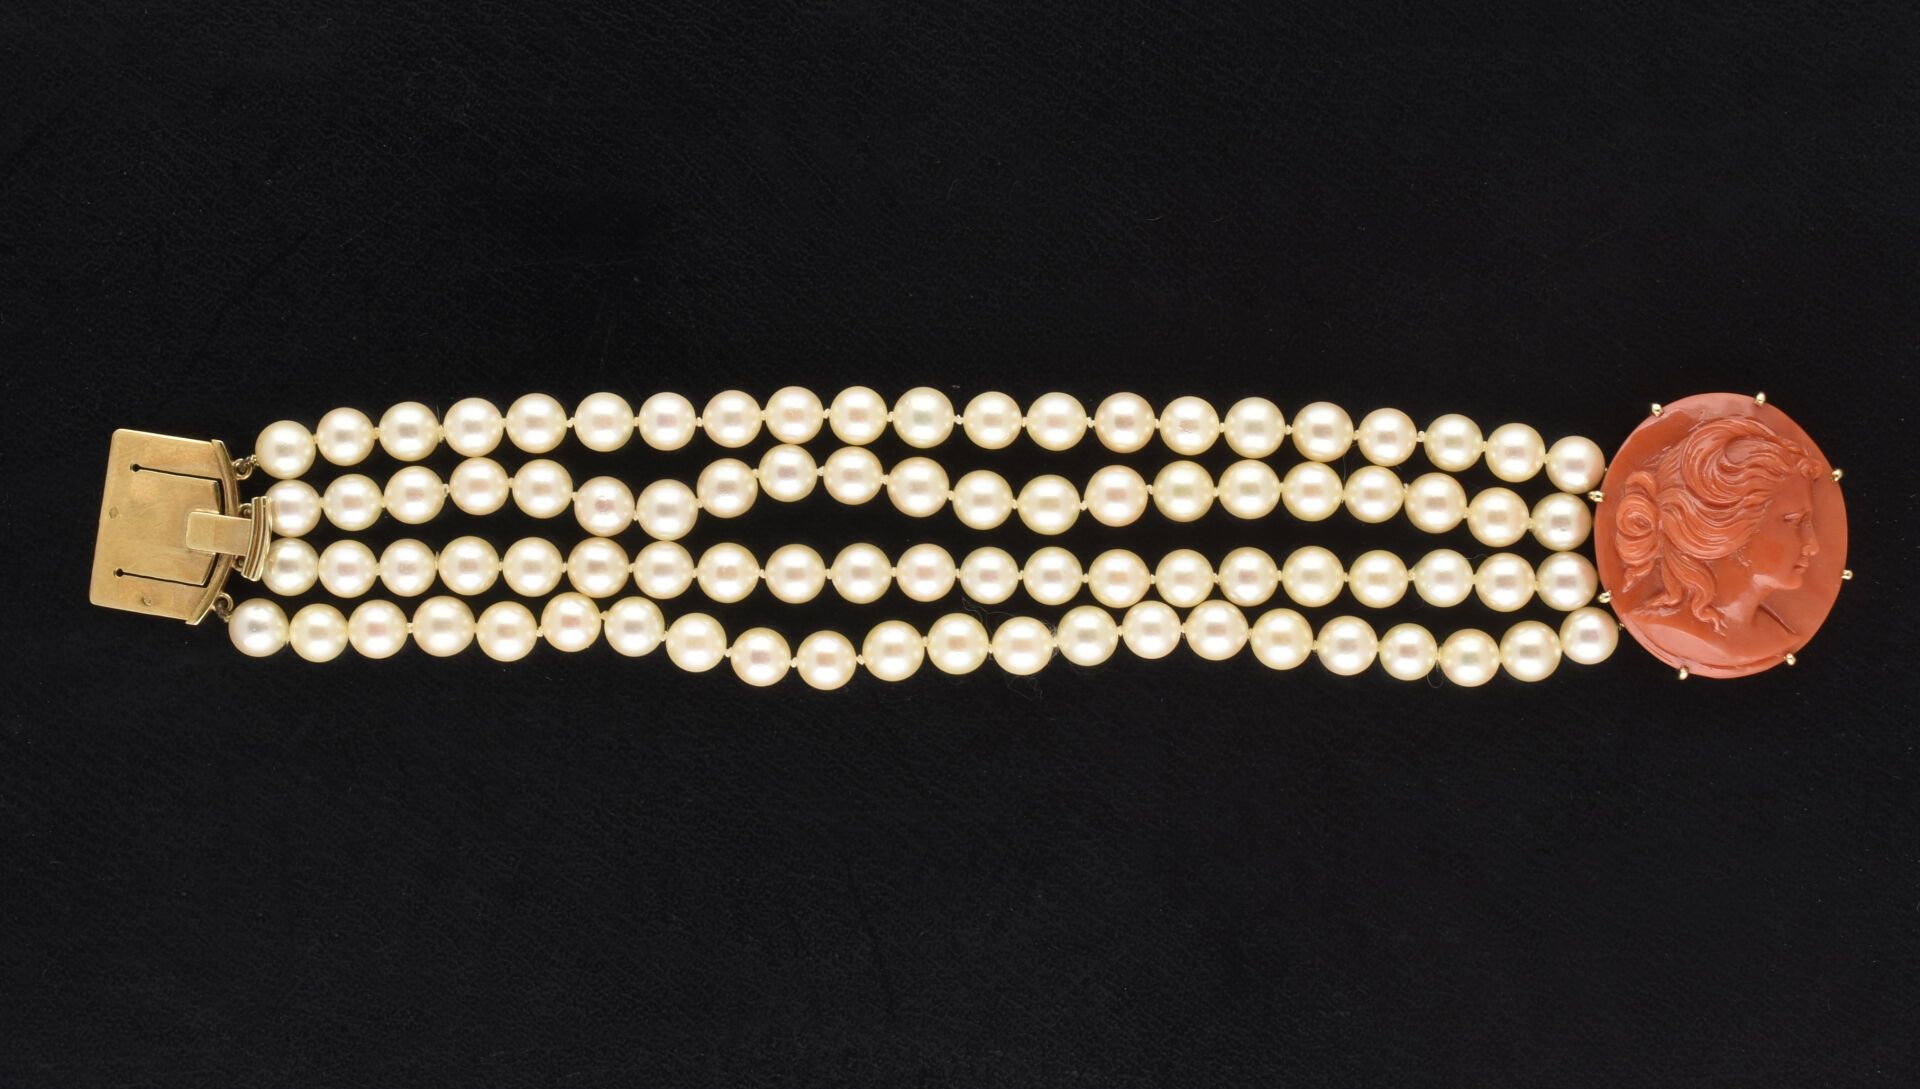 Null 镶嵌 85 颗白色养殖珍珠的 4 排手链，黄金搭扣上饰有一个珊瑚浮雕，浮雕展现了一位女性的半身侧面。
浮雕高度：3.5 厘米
珍珠直径：6.5-7 毫&hellip;